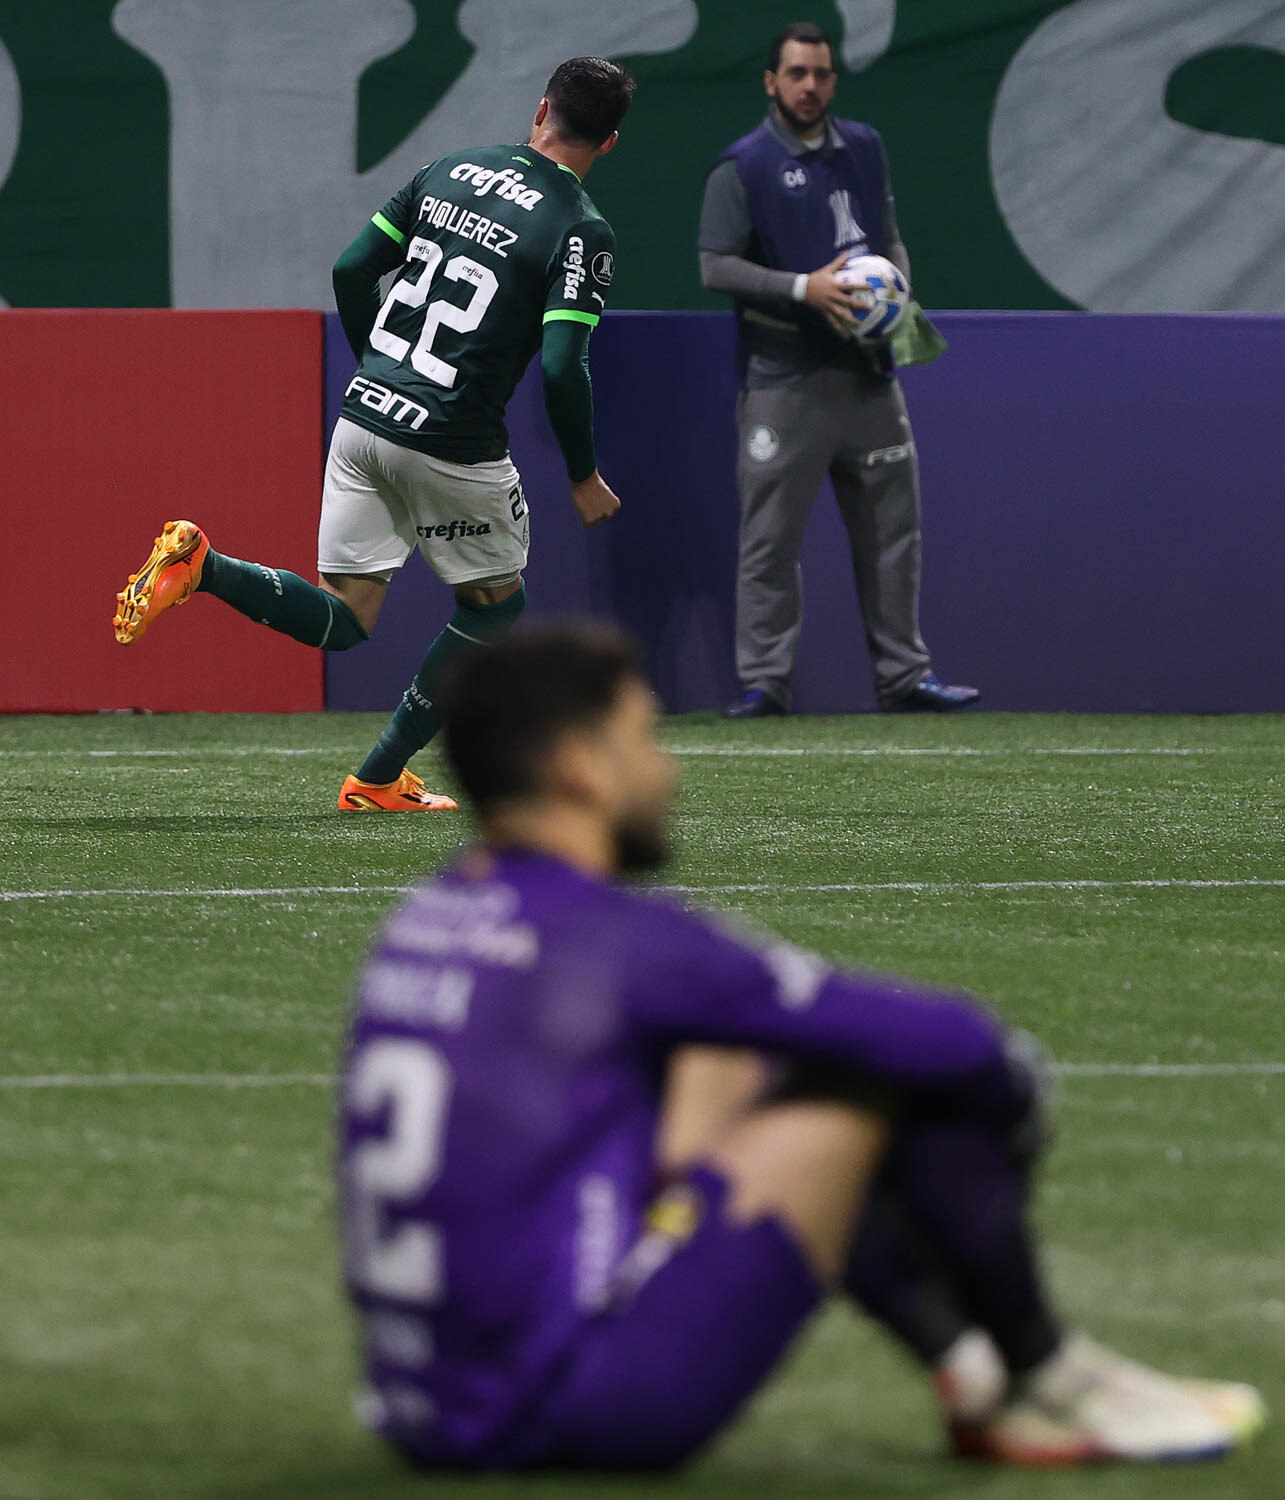 Piquerez comemora o seu gol, que empatou o jogo. Gómez, Artur e Endrick marcaram